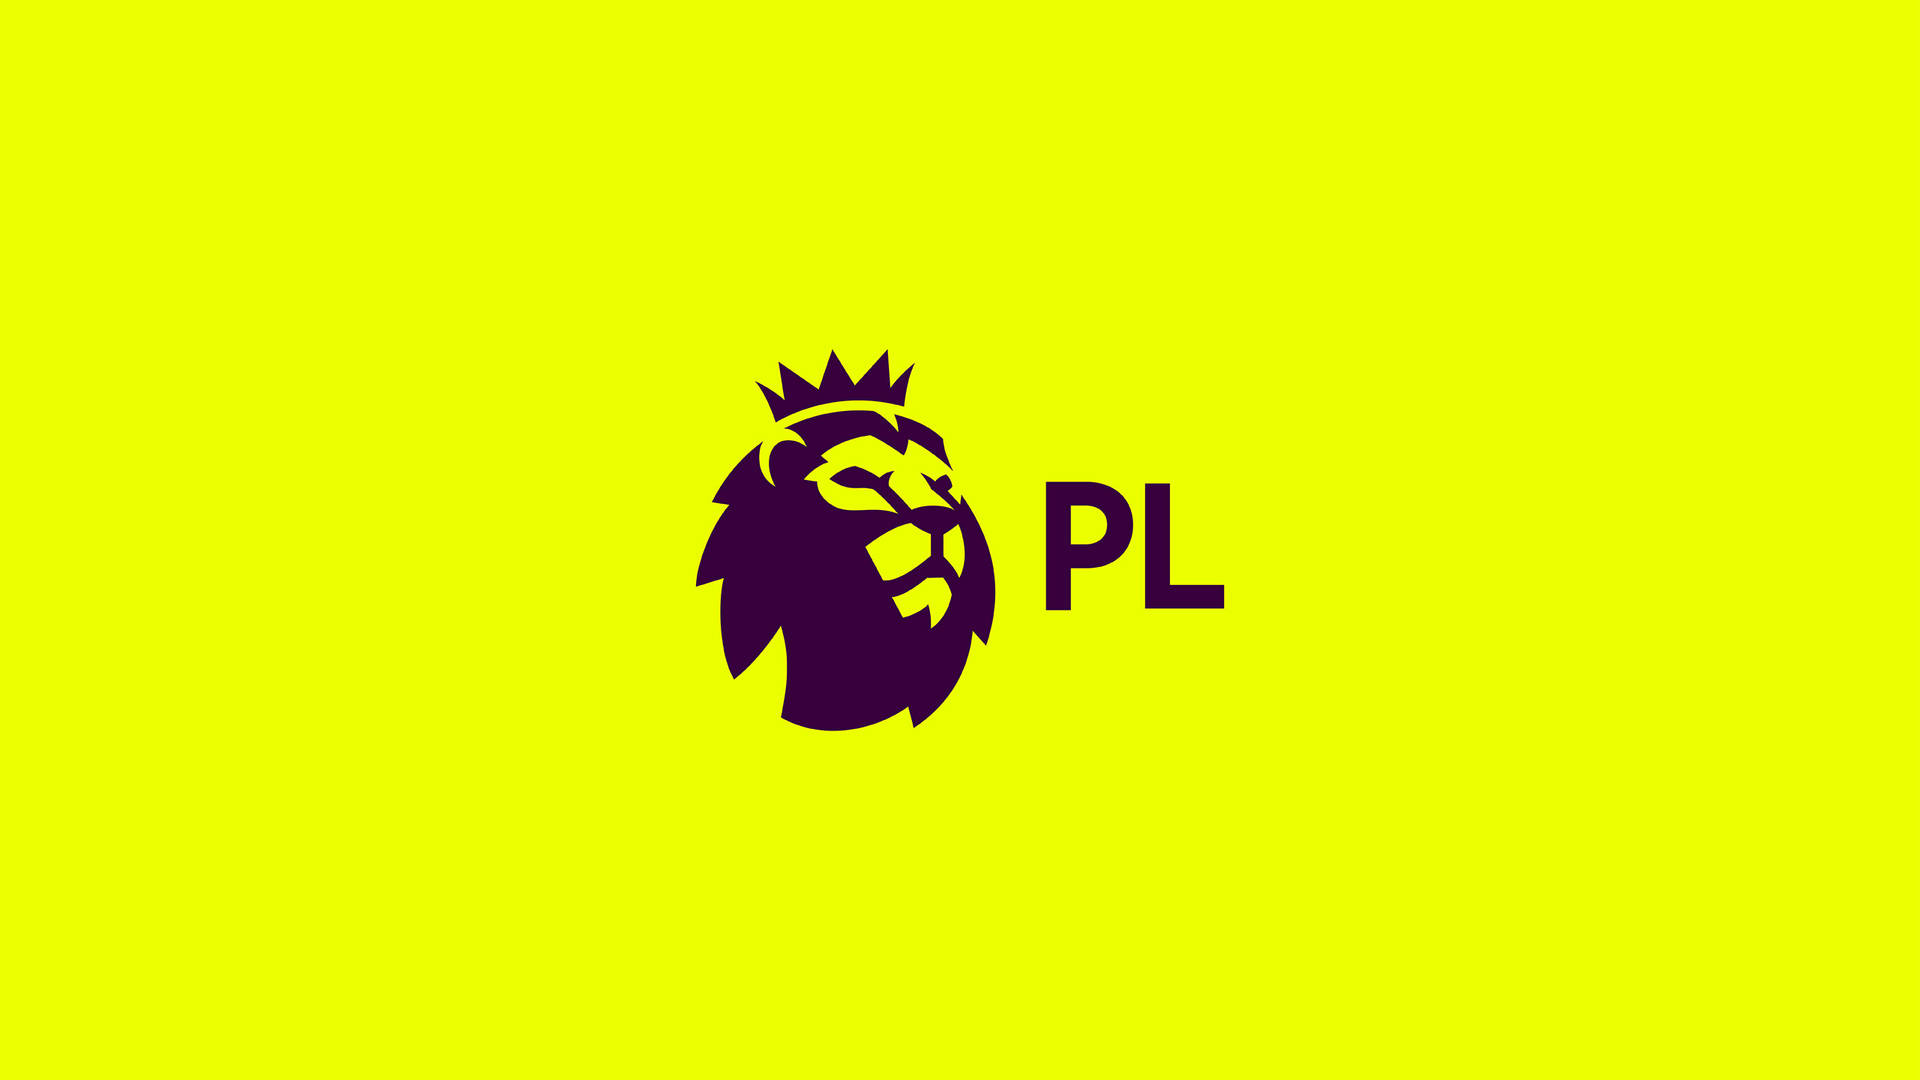 Premier League In Yellow